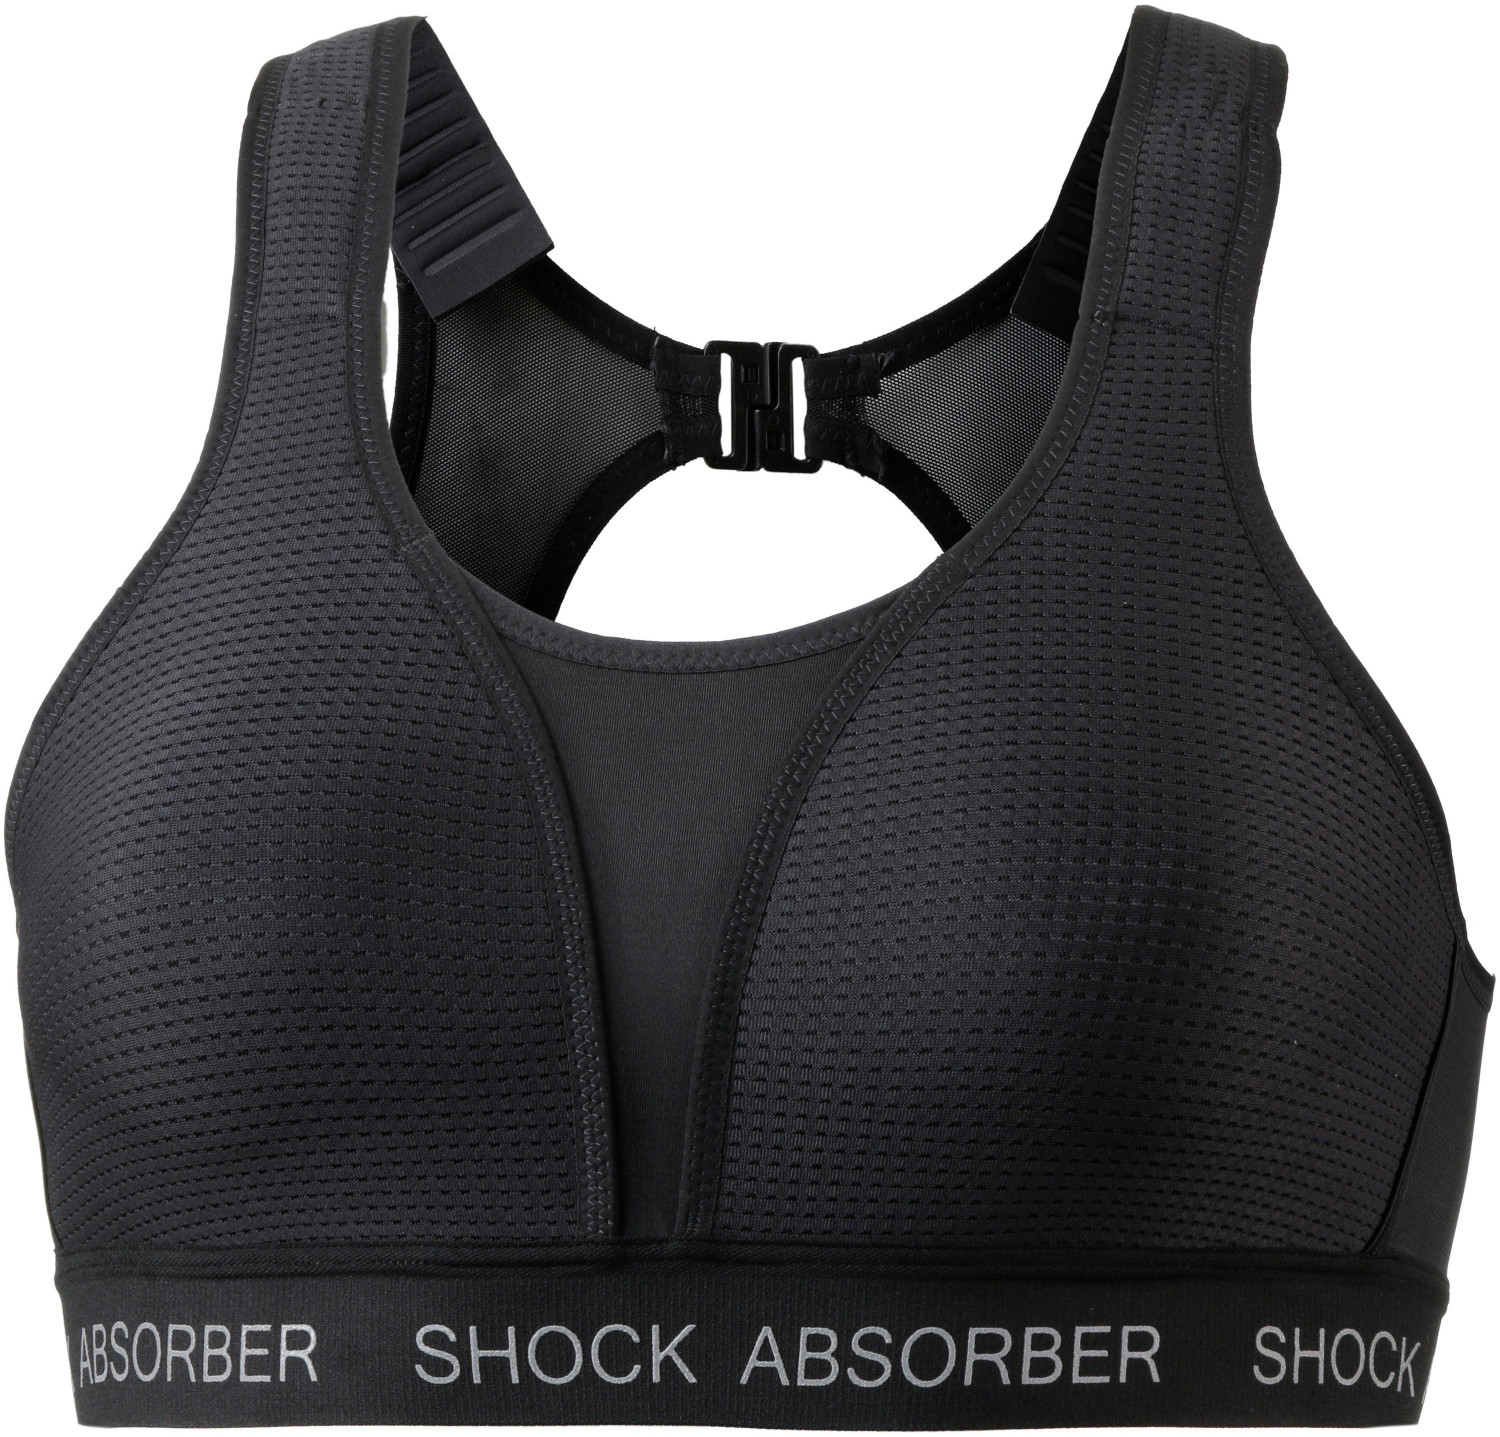 Shock Absorber Ultimate Run Padded Bra 336066 Black Ab 3594 € Preisvergleich Bei Idealode 